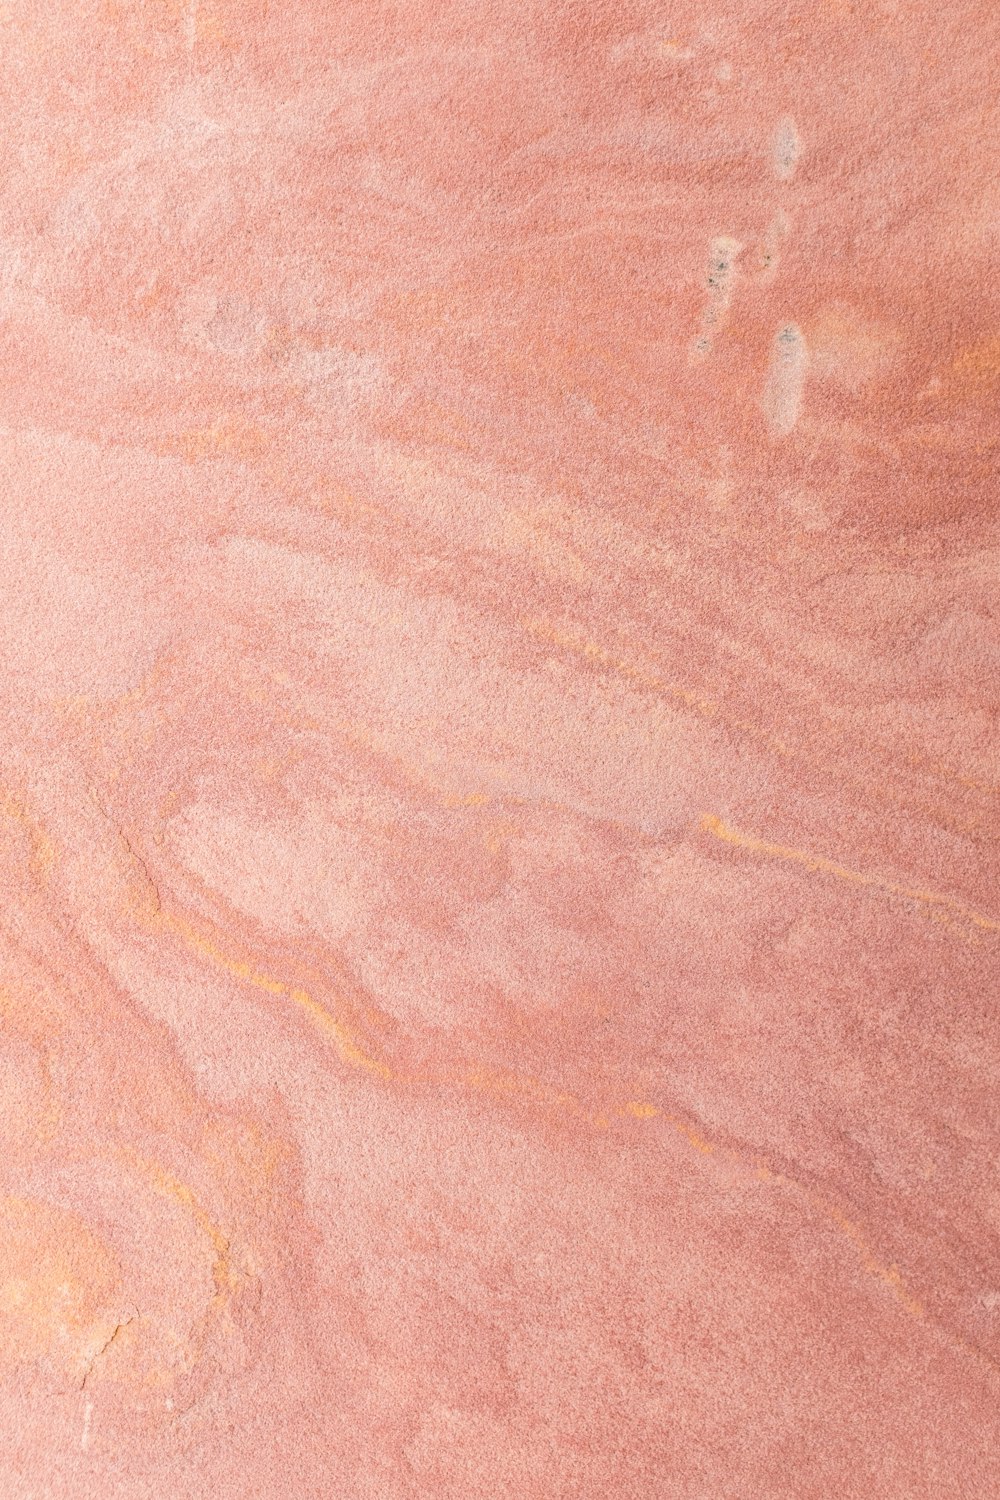 Un skateur roule sur une surface rose